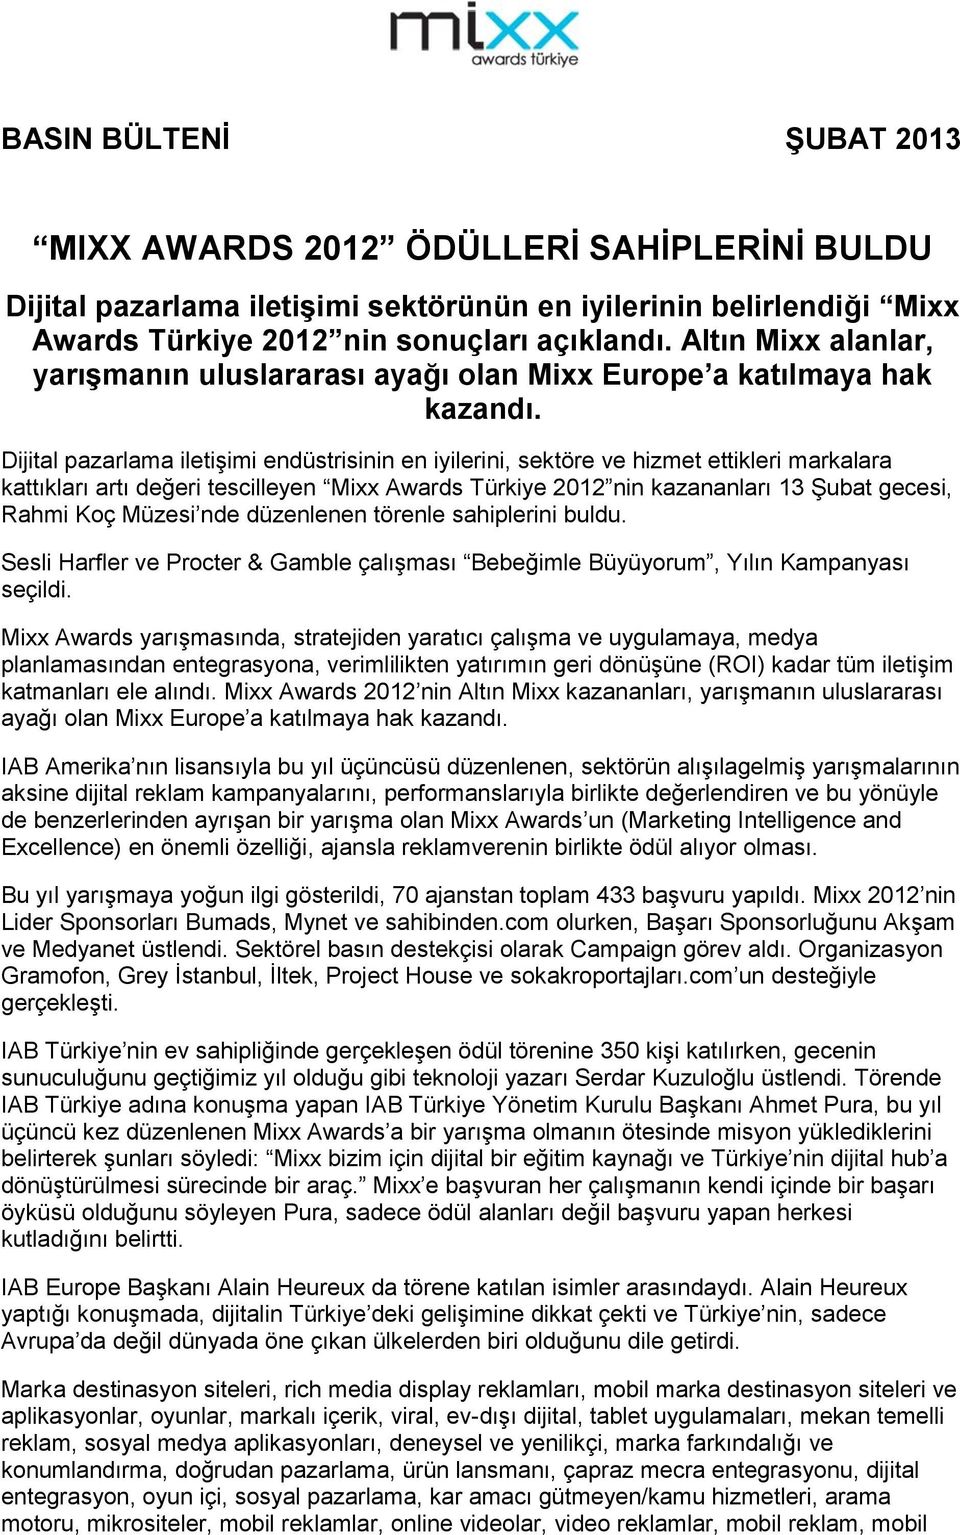 Dijital pazarlama iletişimi endüstrisinin en iyilerini, sektöre ve hizmet ettikleri markalara kattıkları artı değeri tescilleyen Mixx Awards Türkiye 2012 nin kazananları 13 Şubat gecesi, Rahmi Koç